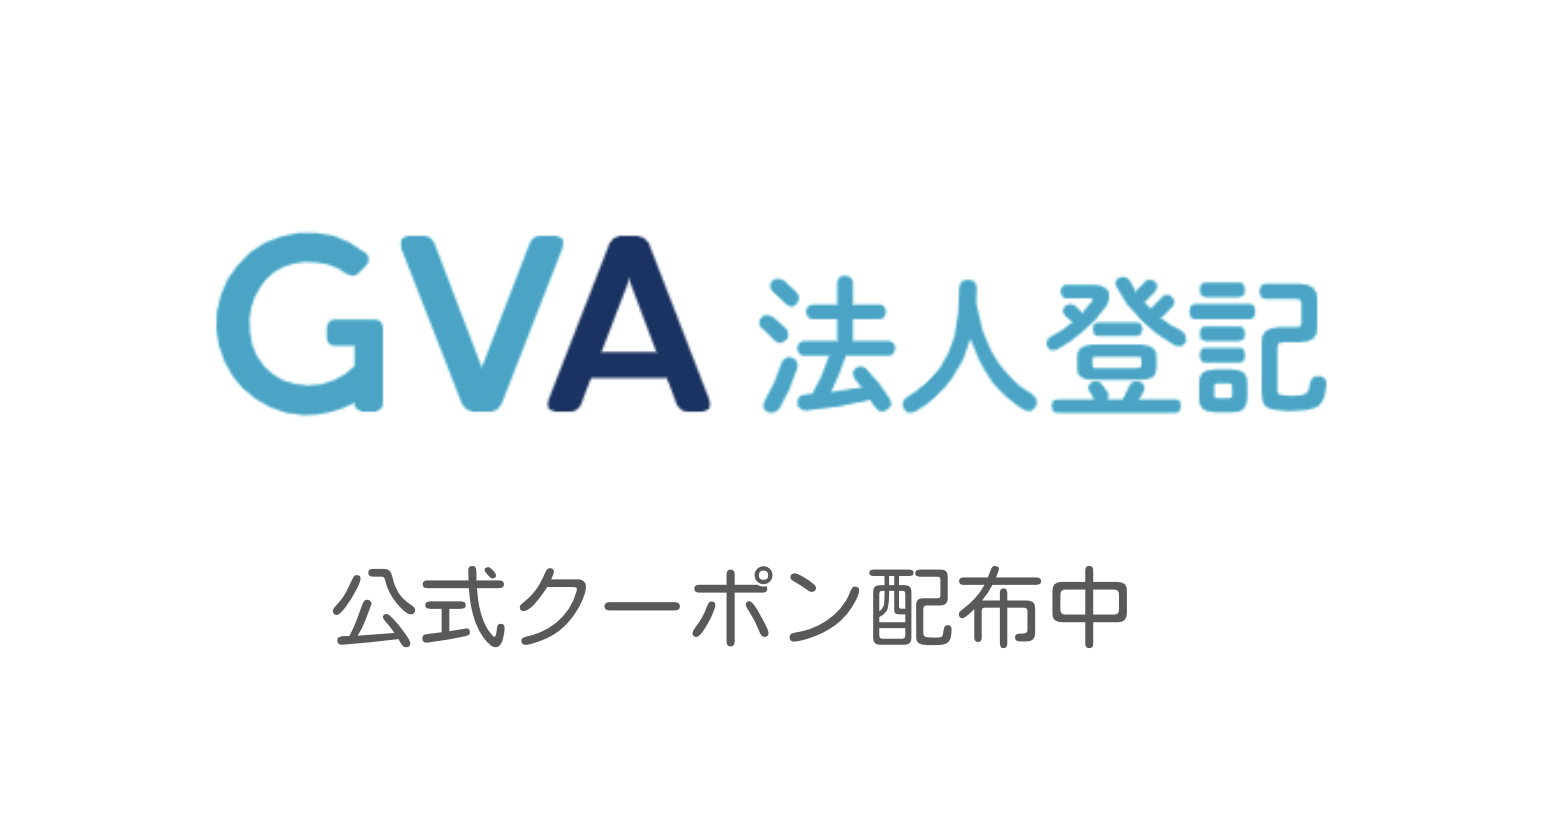 GVA 法人登記 公式クーポンの案内